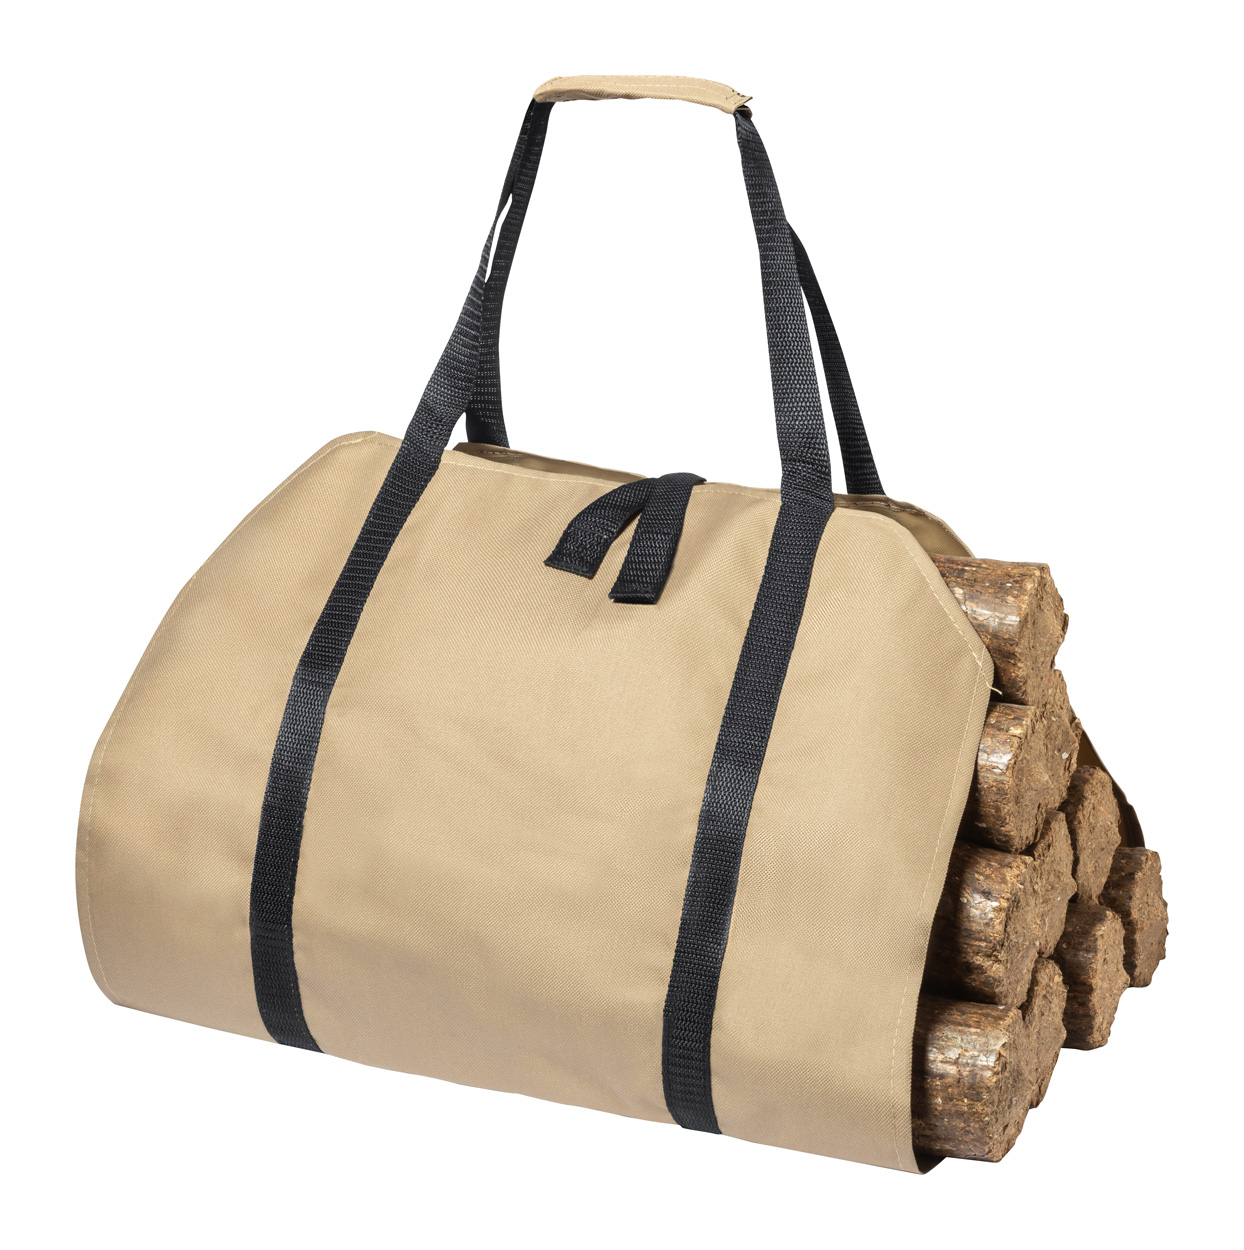 Priya firewood transport bag - Bräune